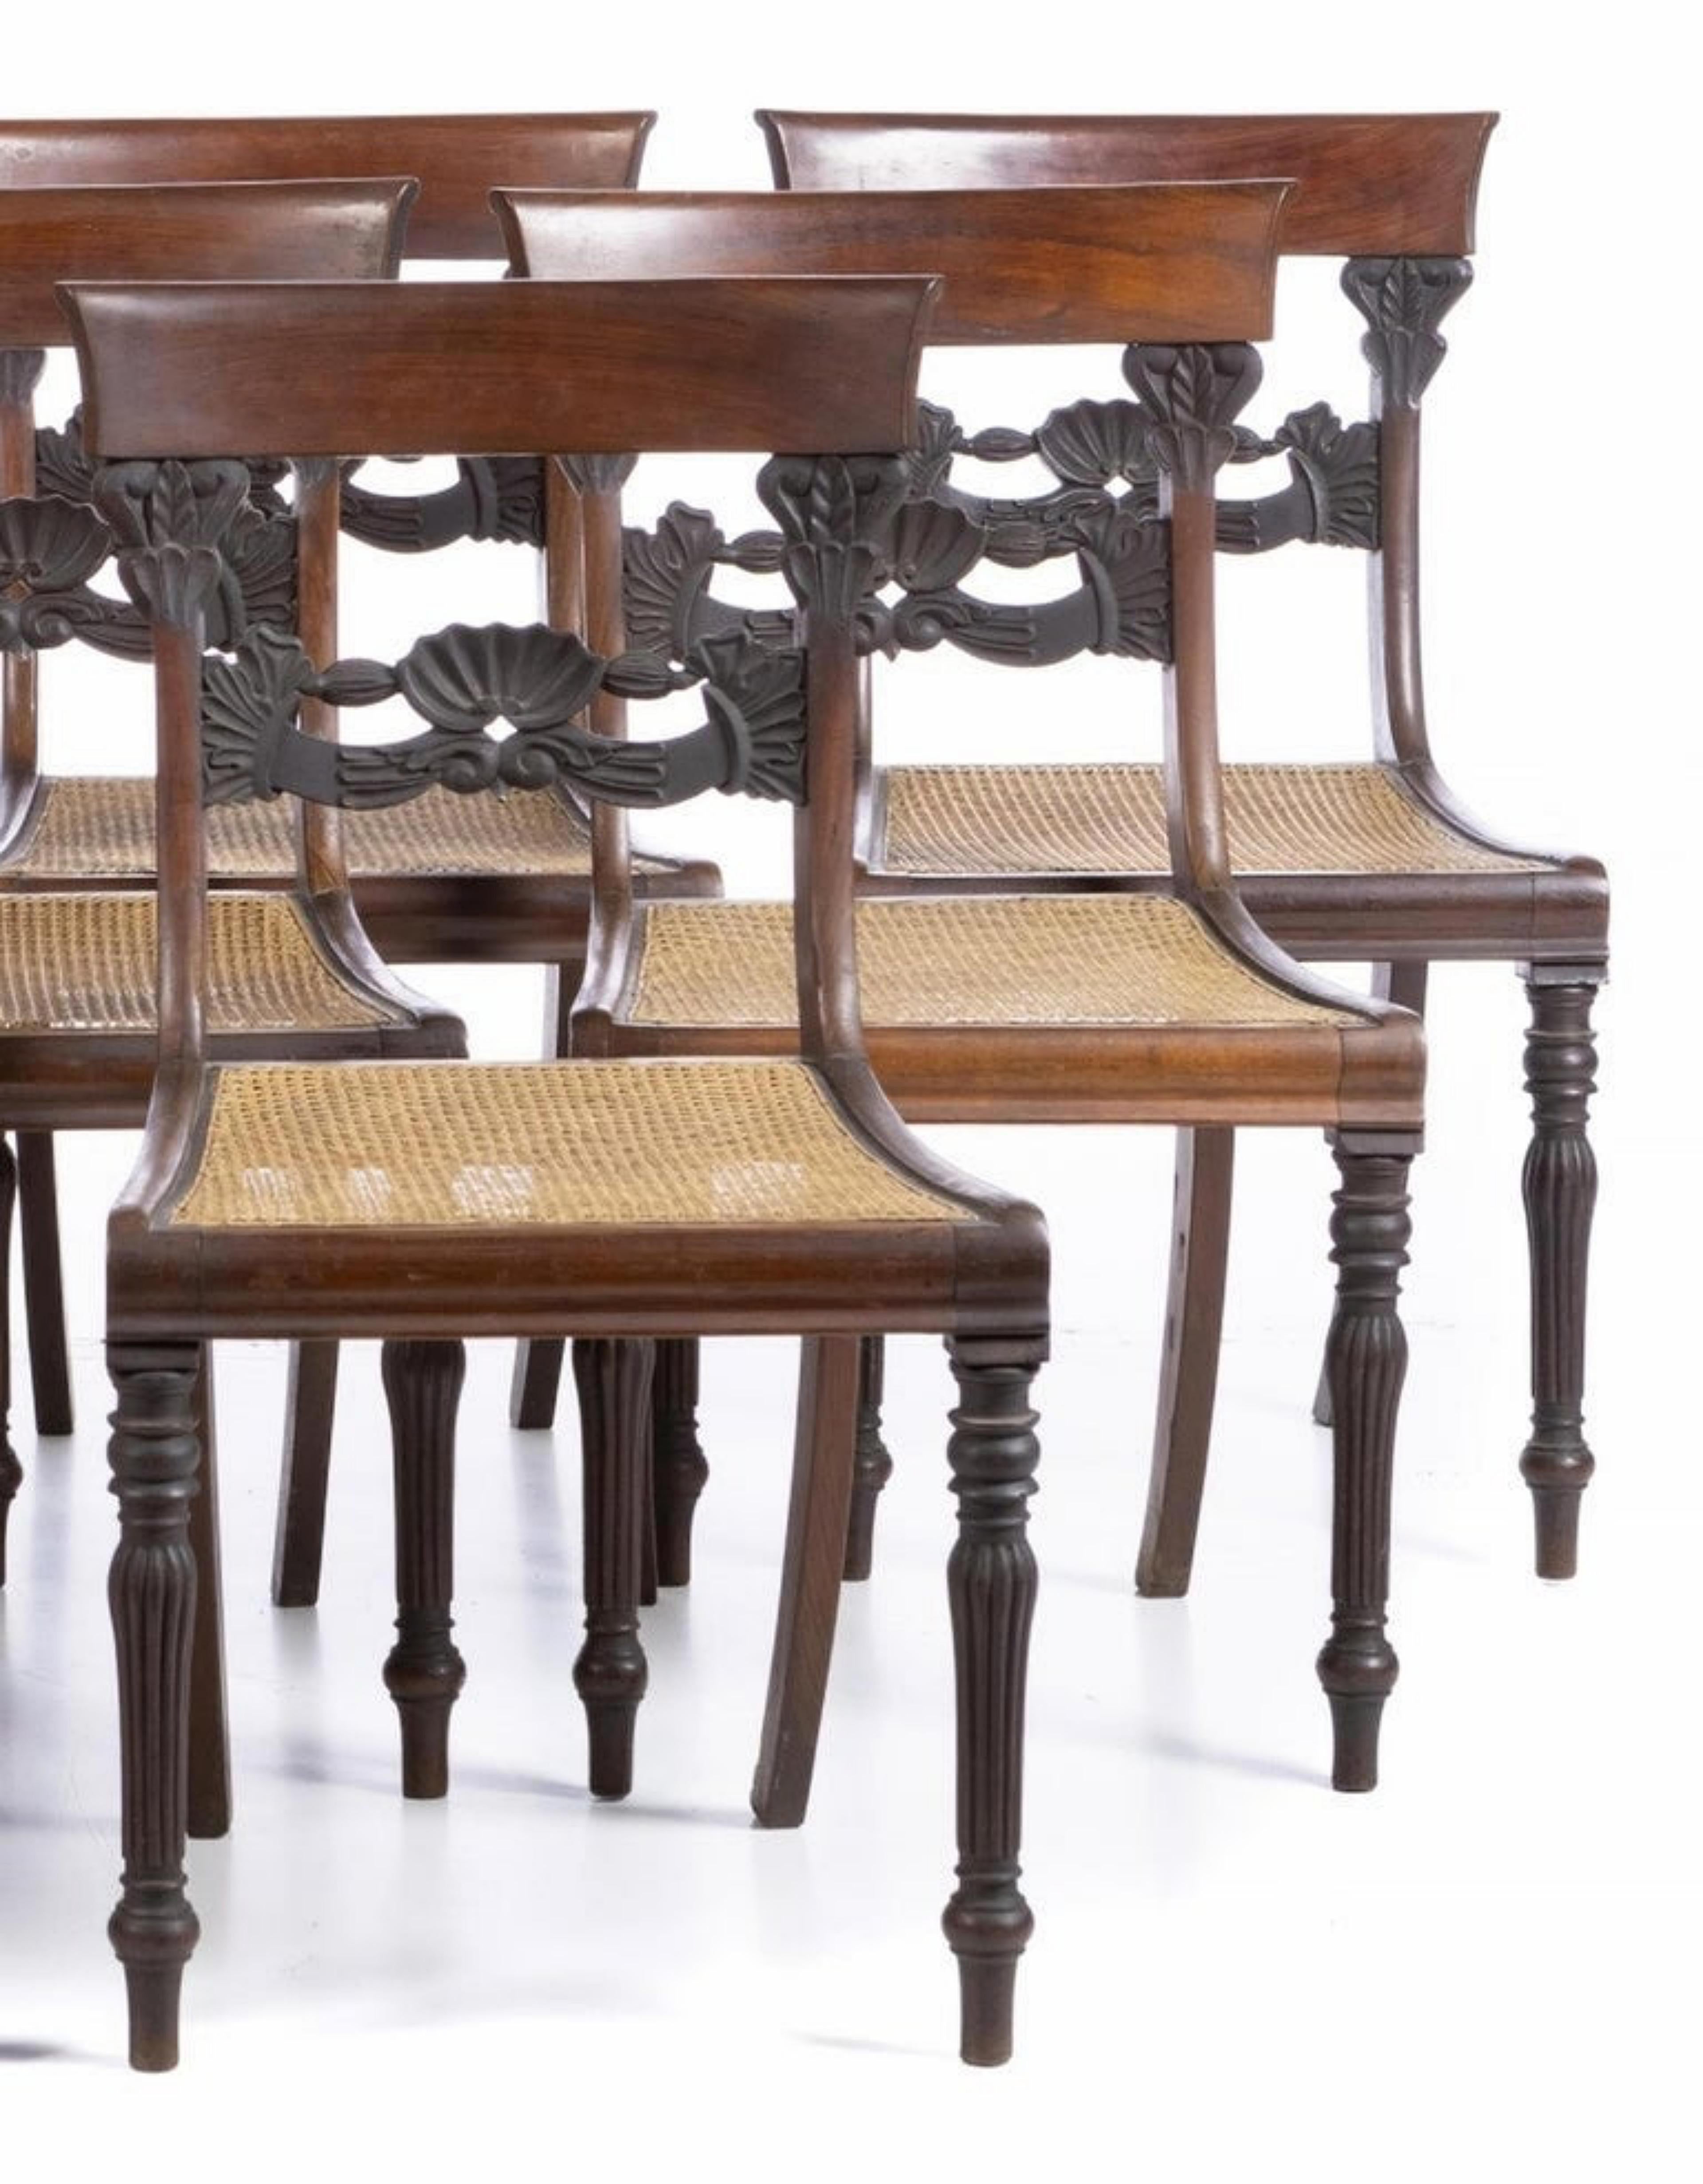 Ensemble de 9 chaises
Portugais, 19e siècle, en bois huilé, assise cannée, dossier creux. 
Petits défauts et signes d'utilisation. 
Dimensions : 88 x 47 x 43 cm.